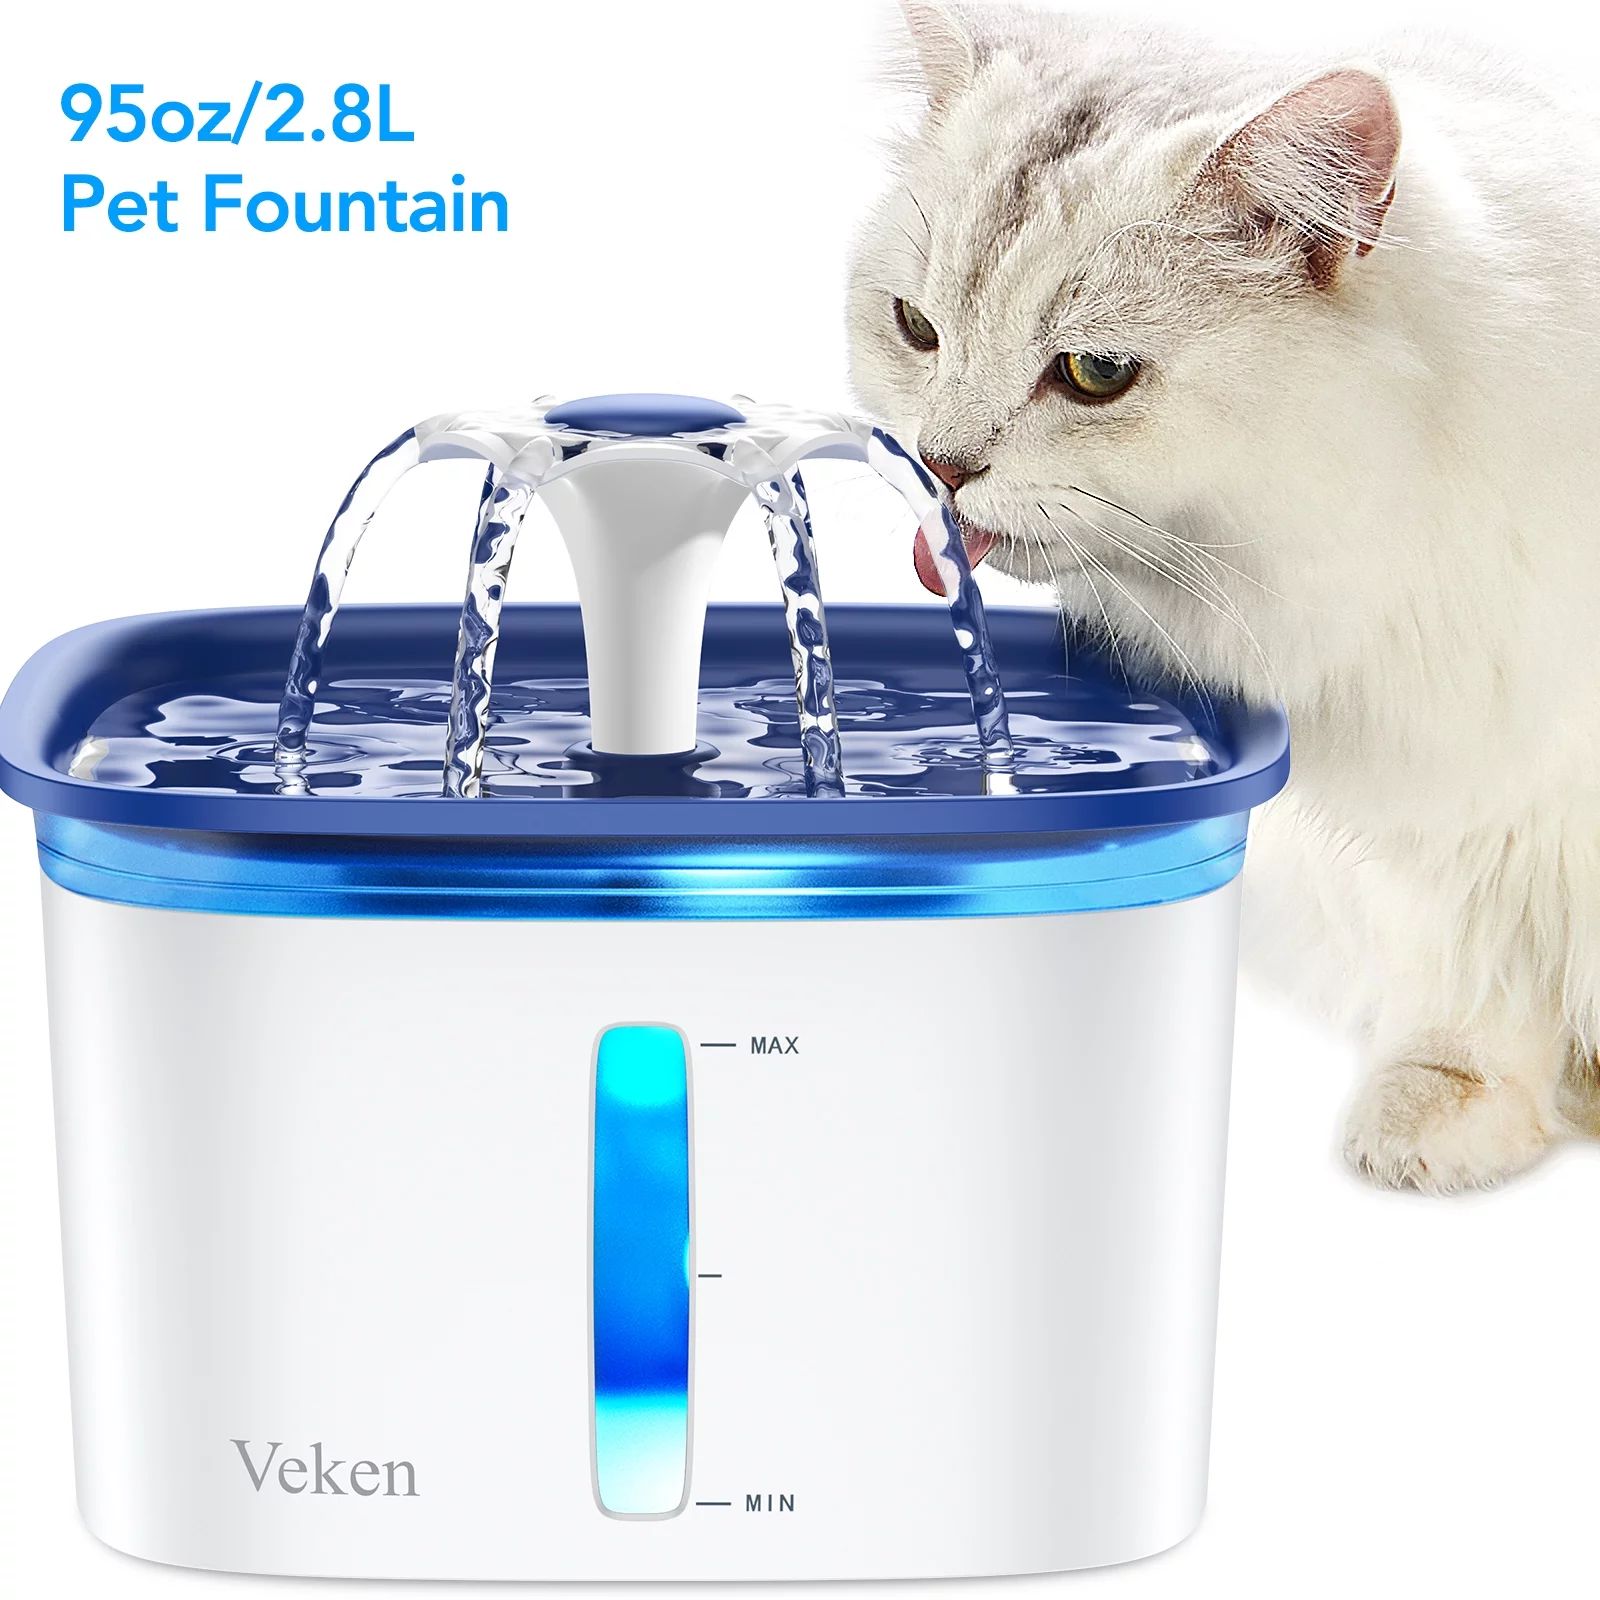 Veken 95oz/2.8L Pet Fountain, Cat Dog Water Fountain Dispenser with Smart Pump,Blue | Walmart (US)